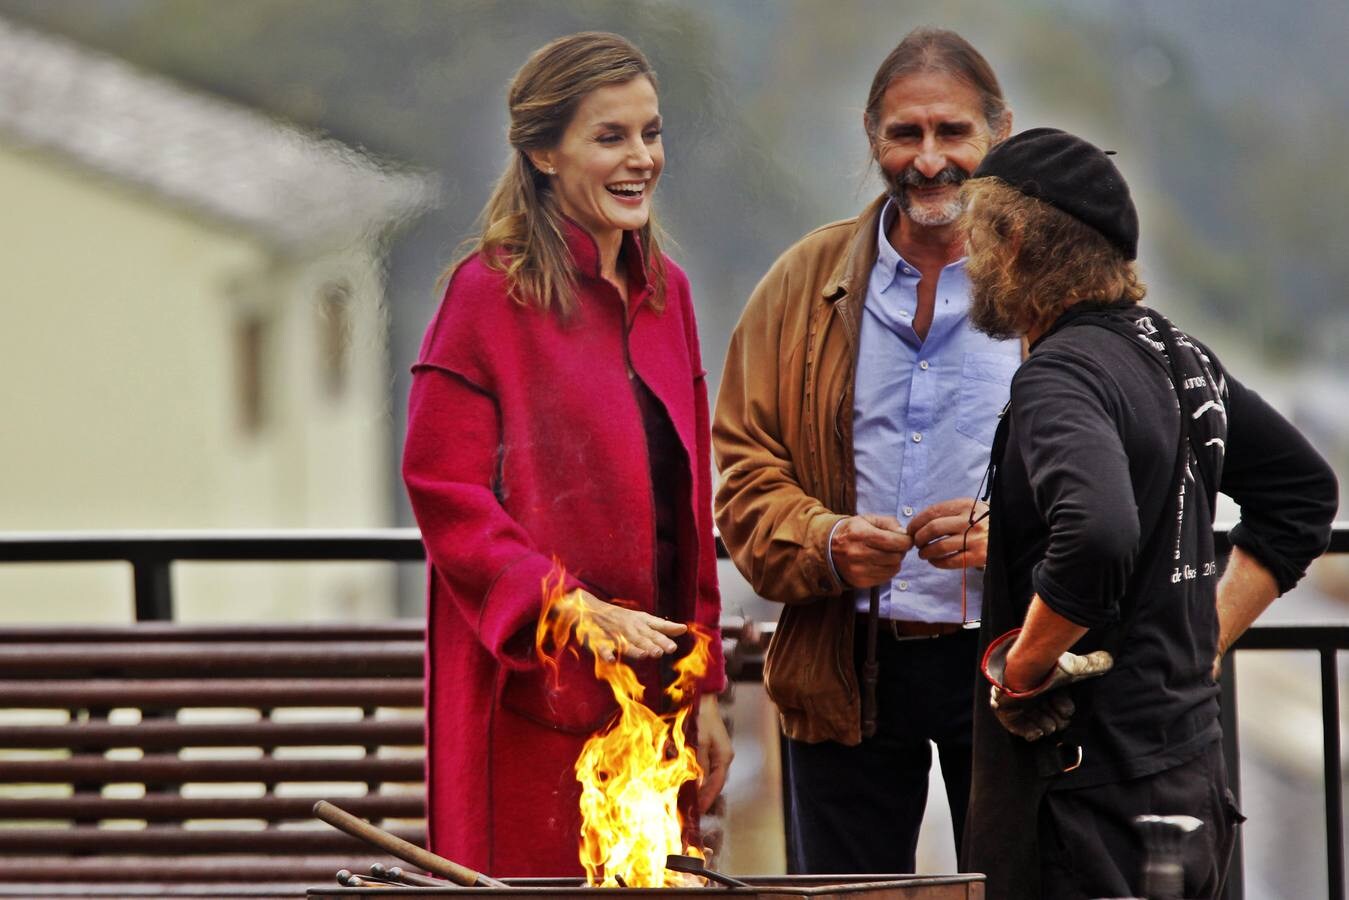 La reina Letizia se calienta las manos en el fuego de una fragua durante su visita a la comarca de Los Oscos (Asturias) con motivo de la entrega del Premio al Pueblo Ejemplar de Asturias 2016. (Foto: Alberto Morante)